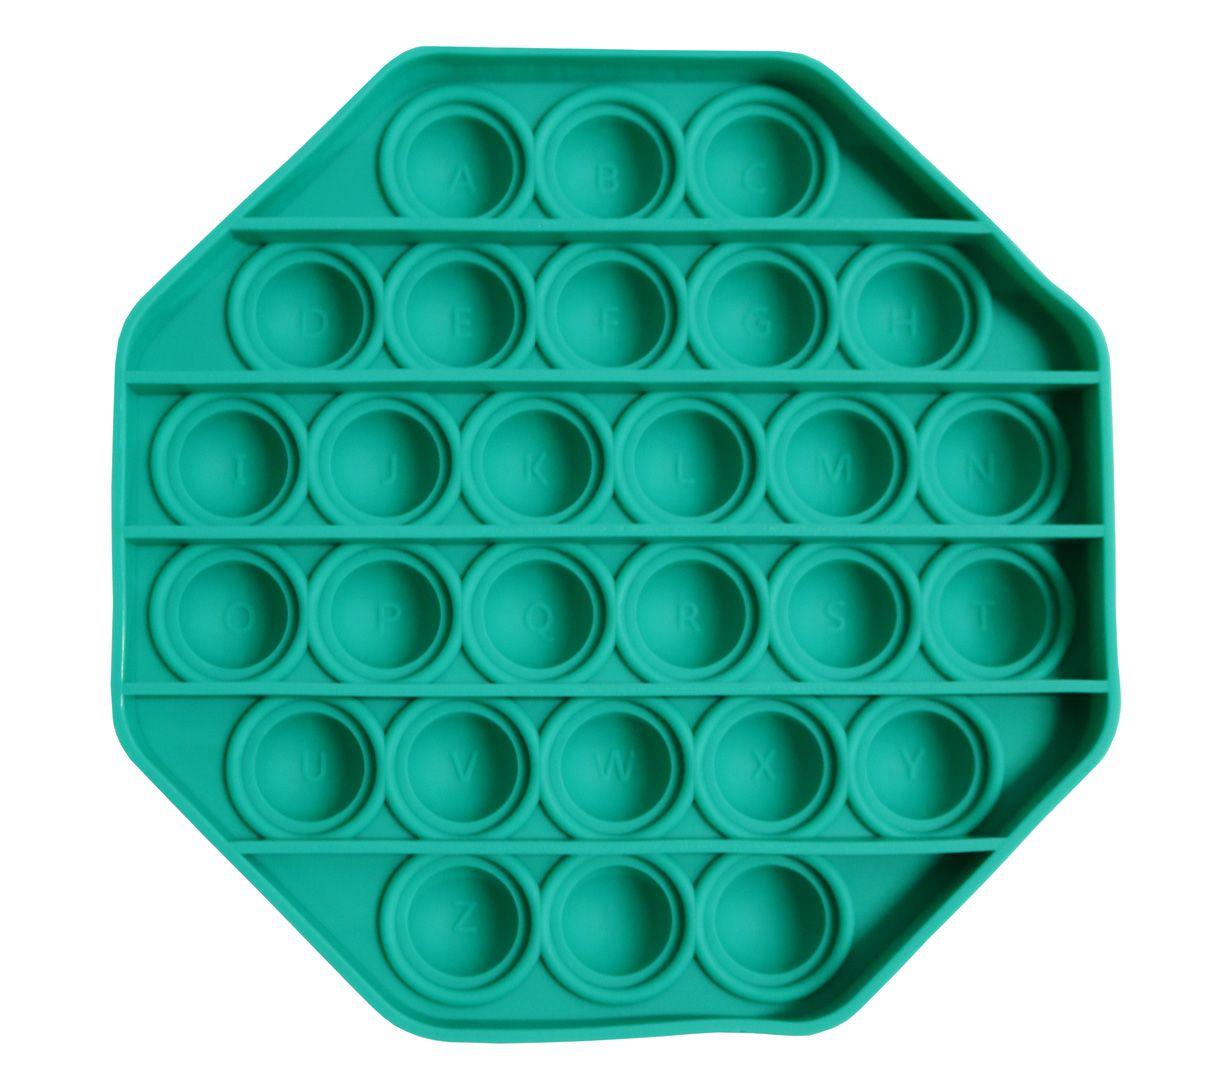 Zabawka sensoryczna PopIt antystresowa w kształcie oktagonu - zielona